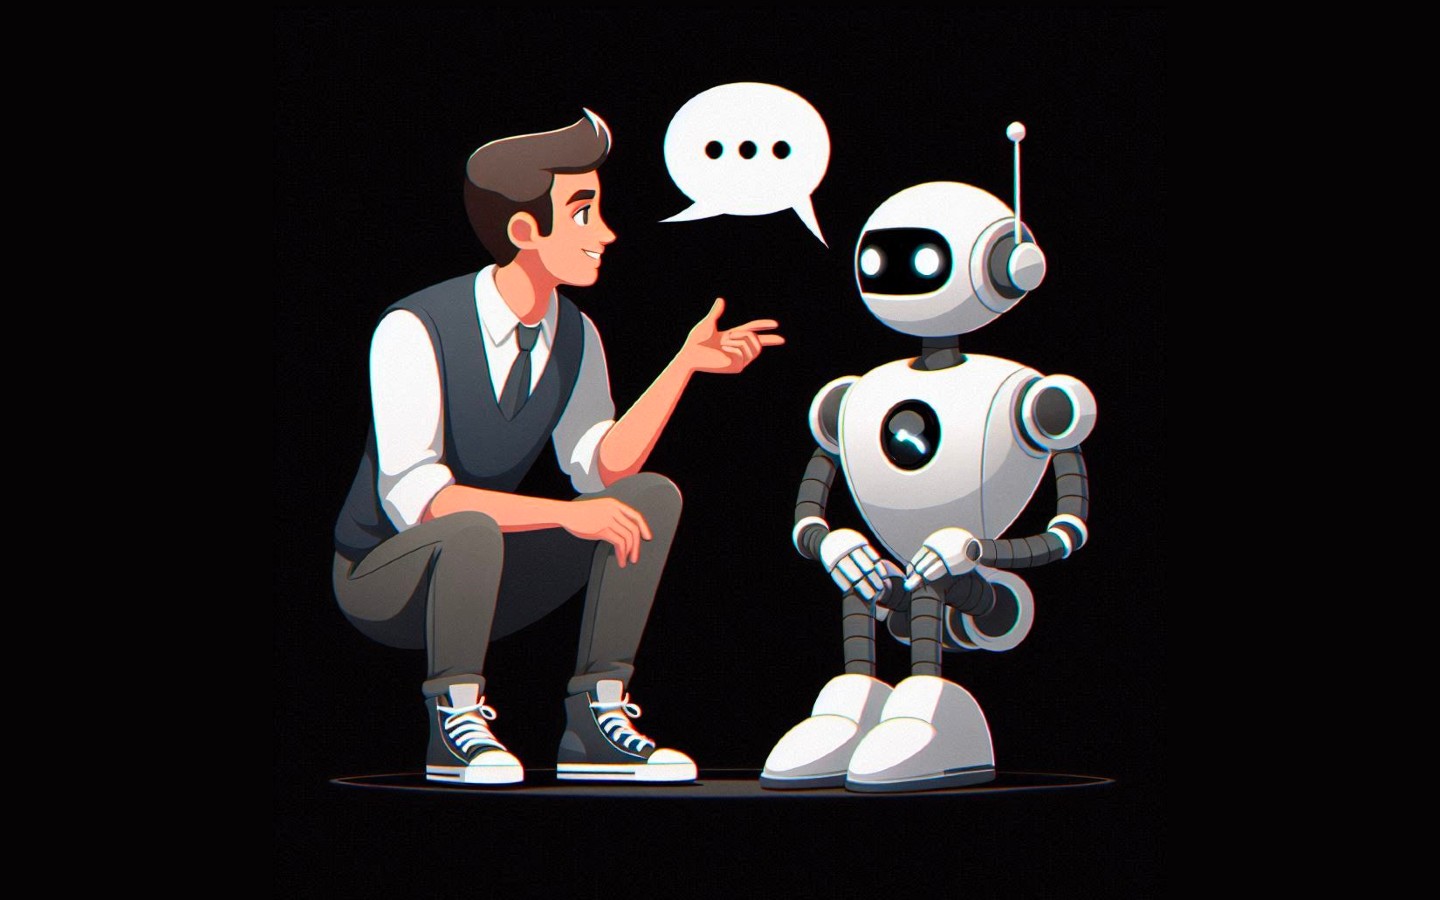 Robot and human chatting